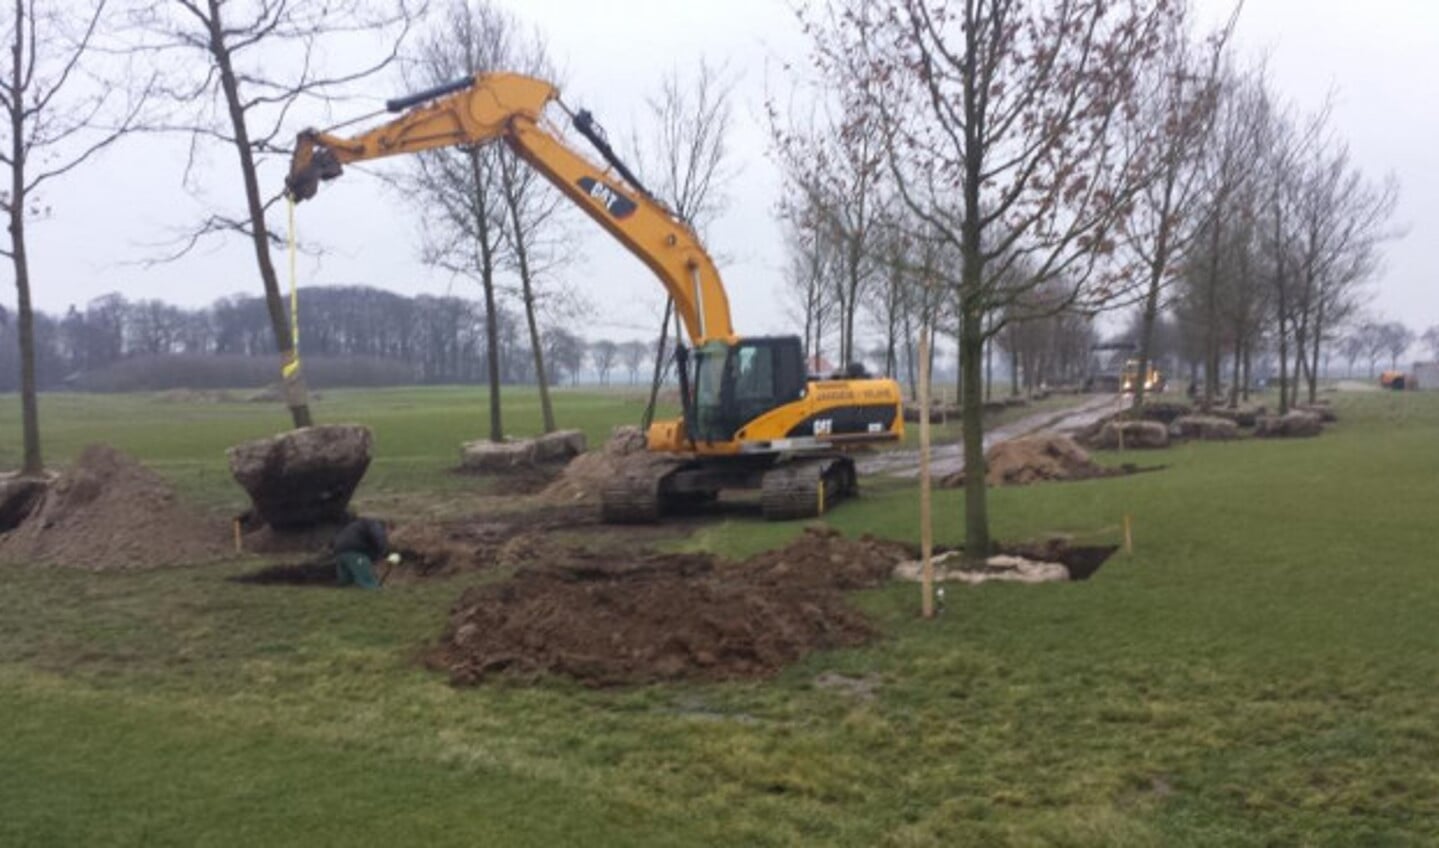 Golftuin Zwolle opent begin mei haar deuren